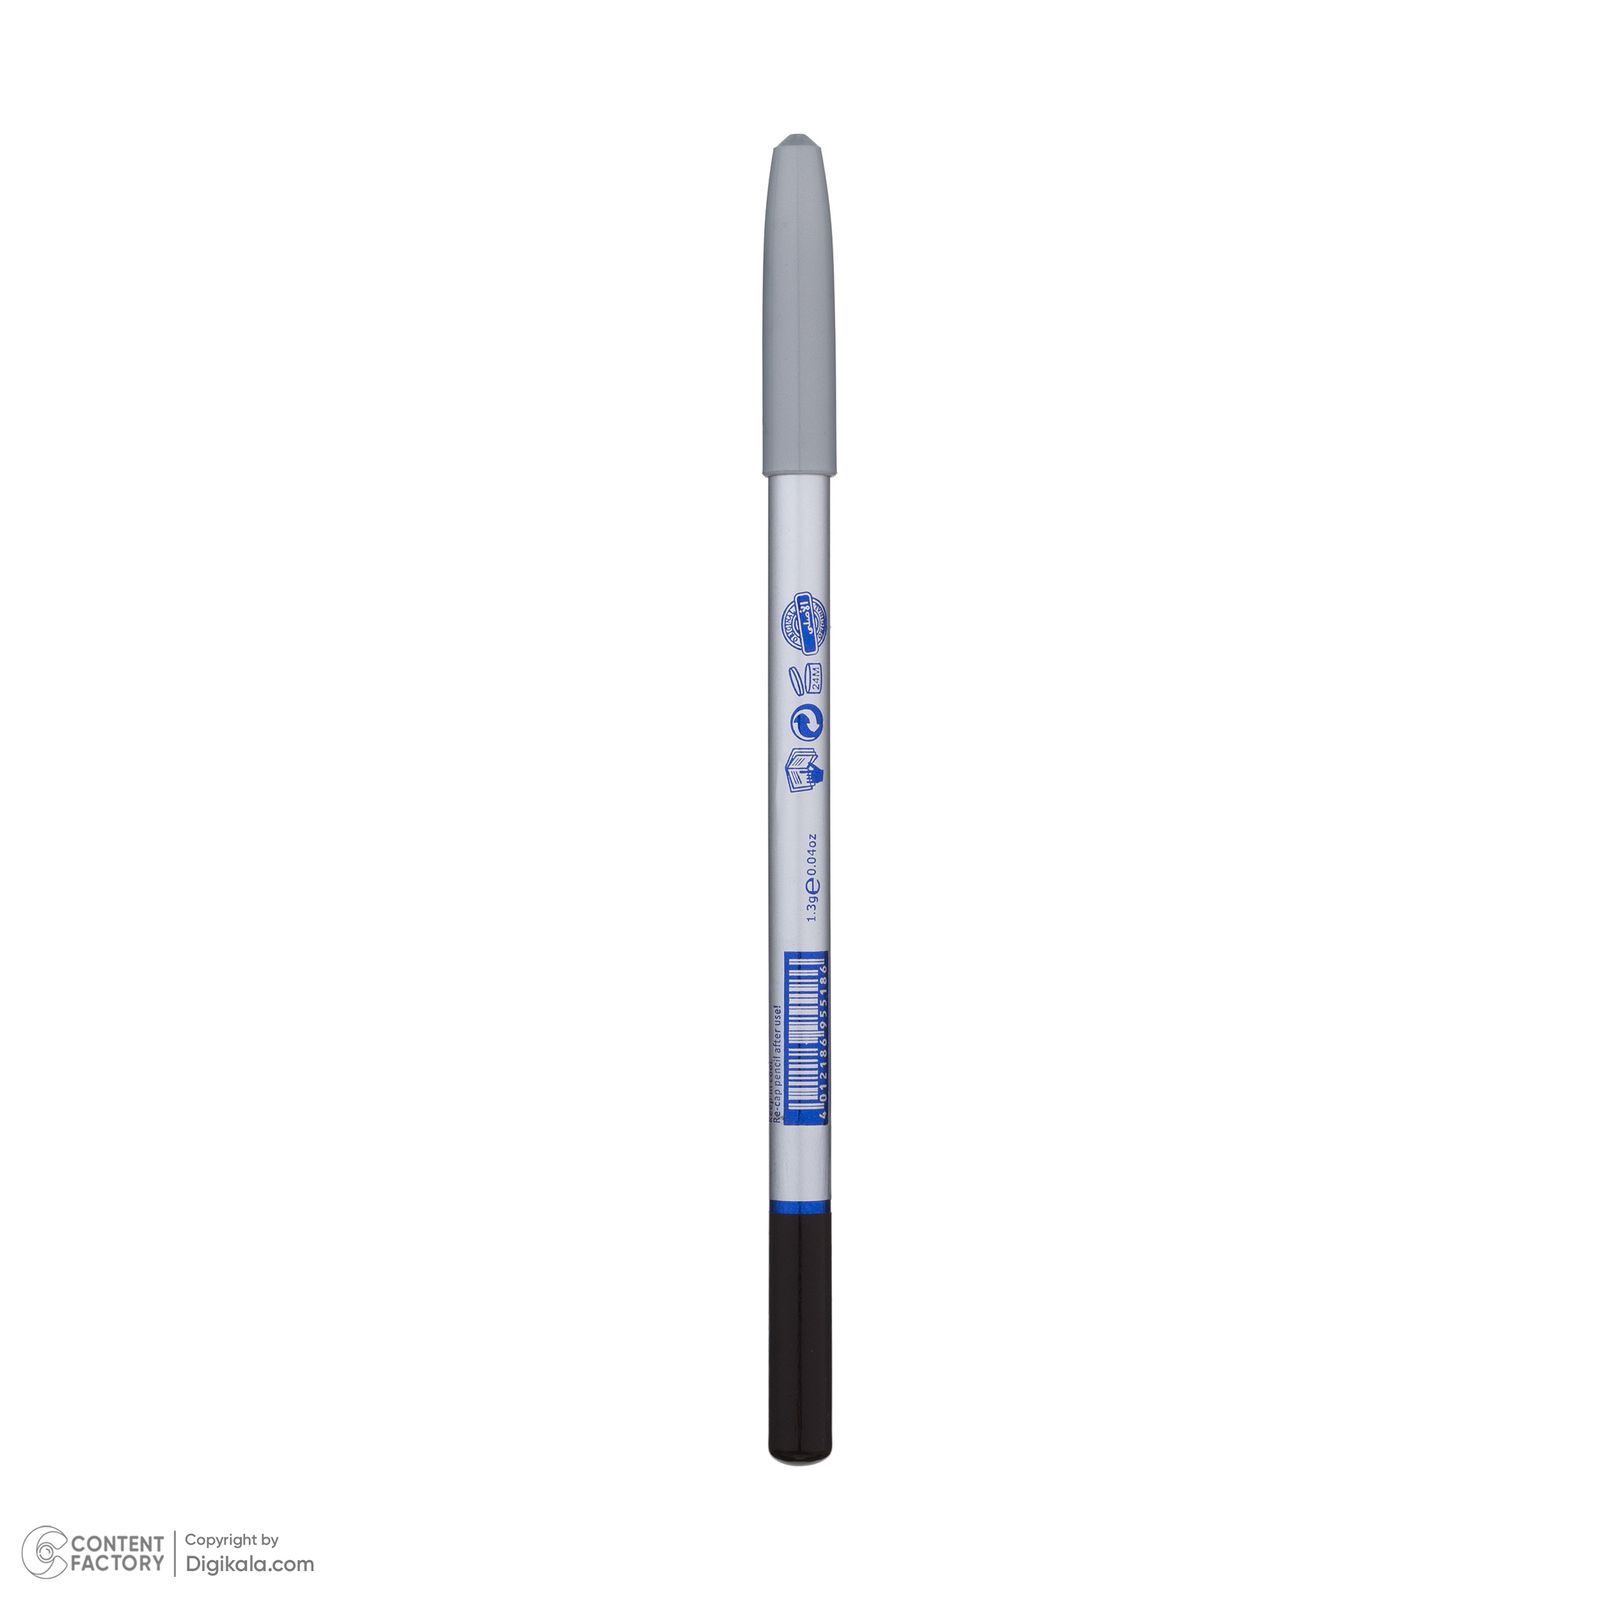  مداد چشم بارین بیوتی شماره 09 -  - 9